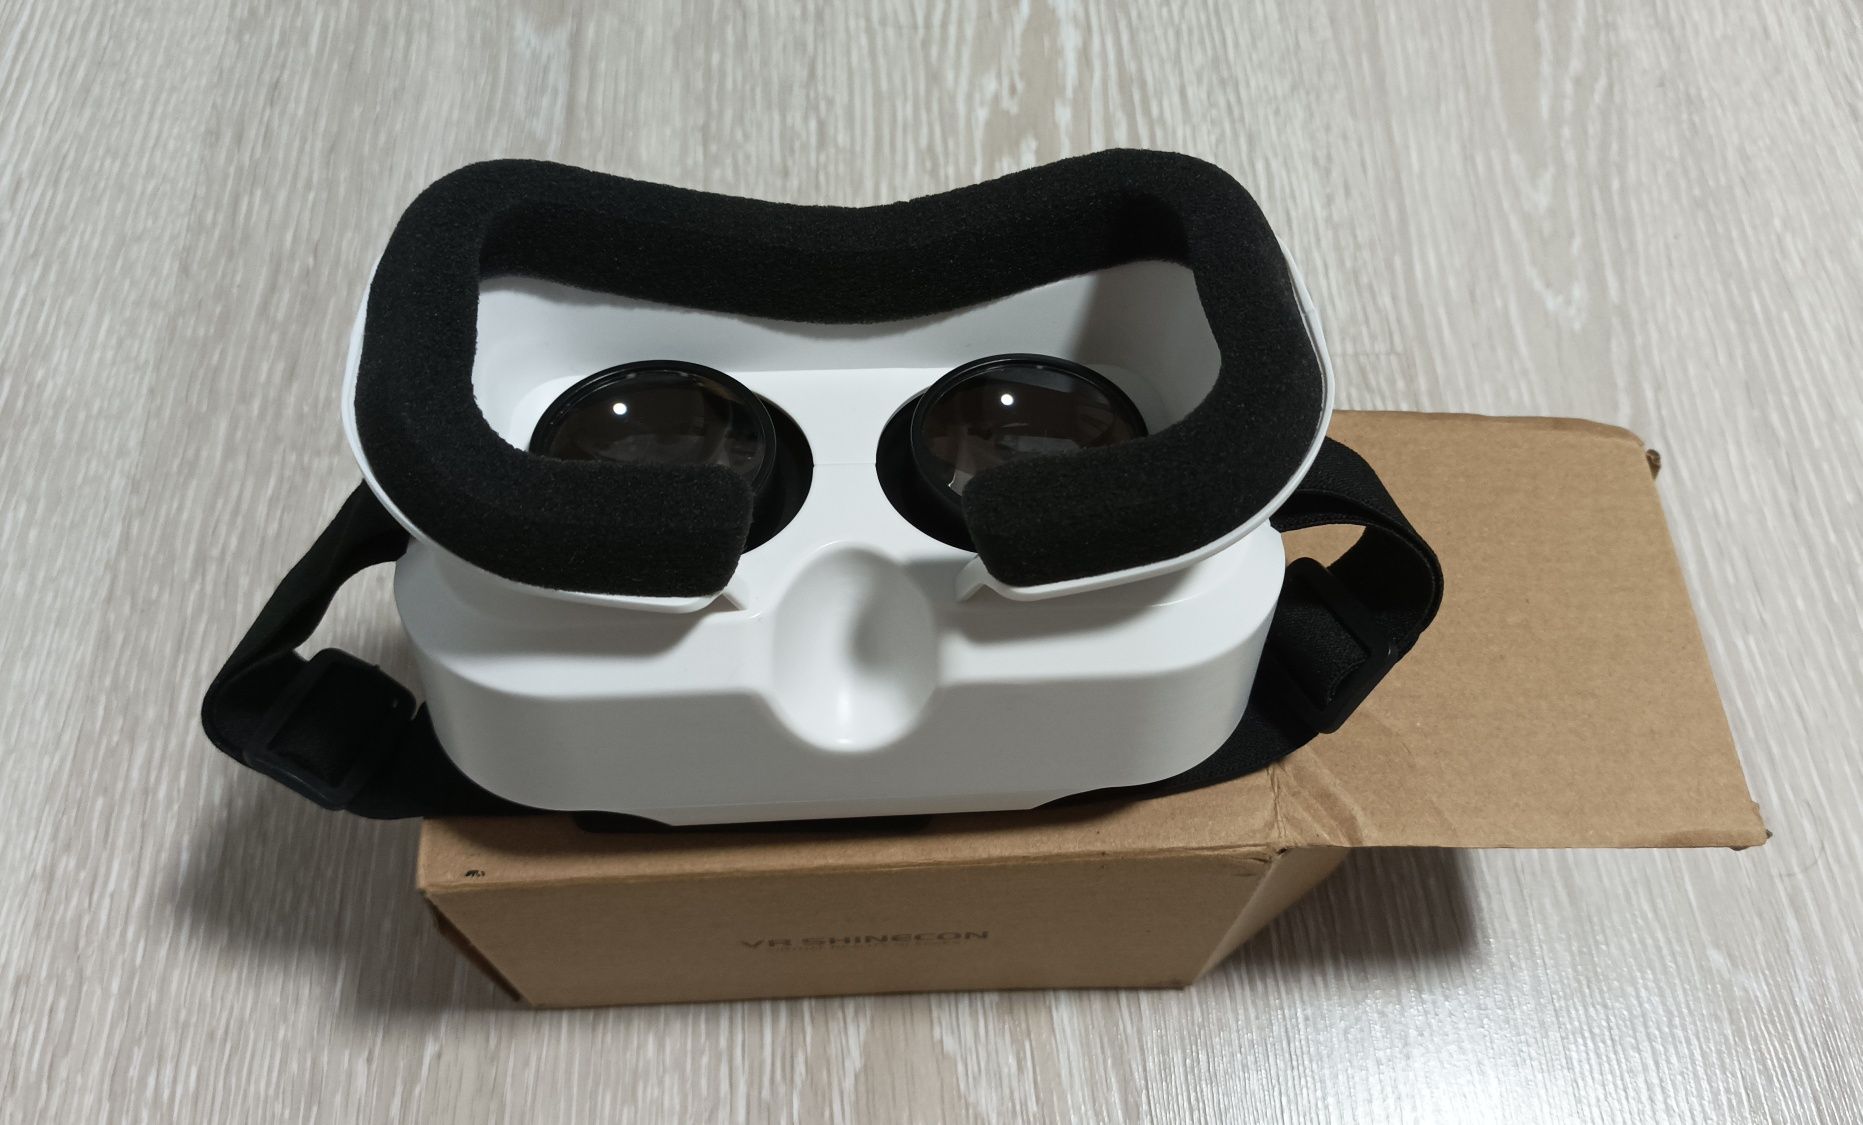 Очки виртуальной реальности 3D VR Shinecon